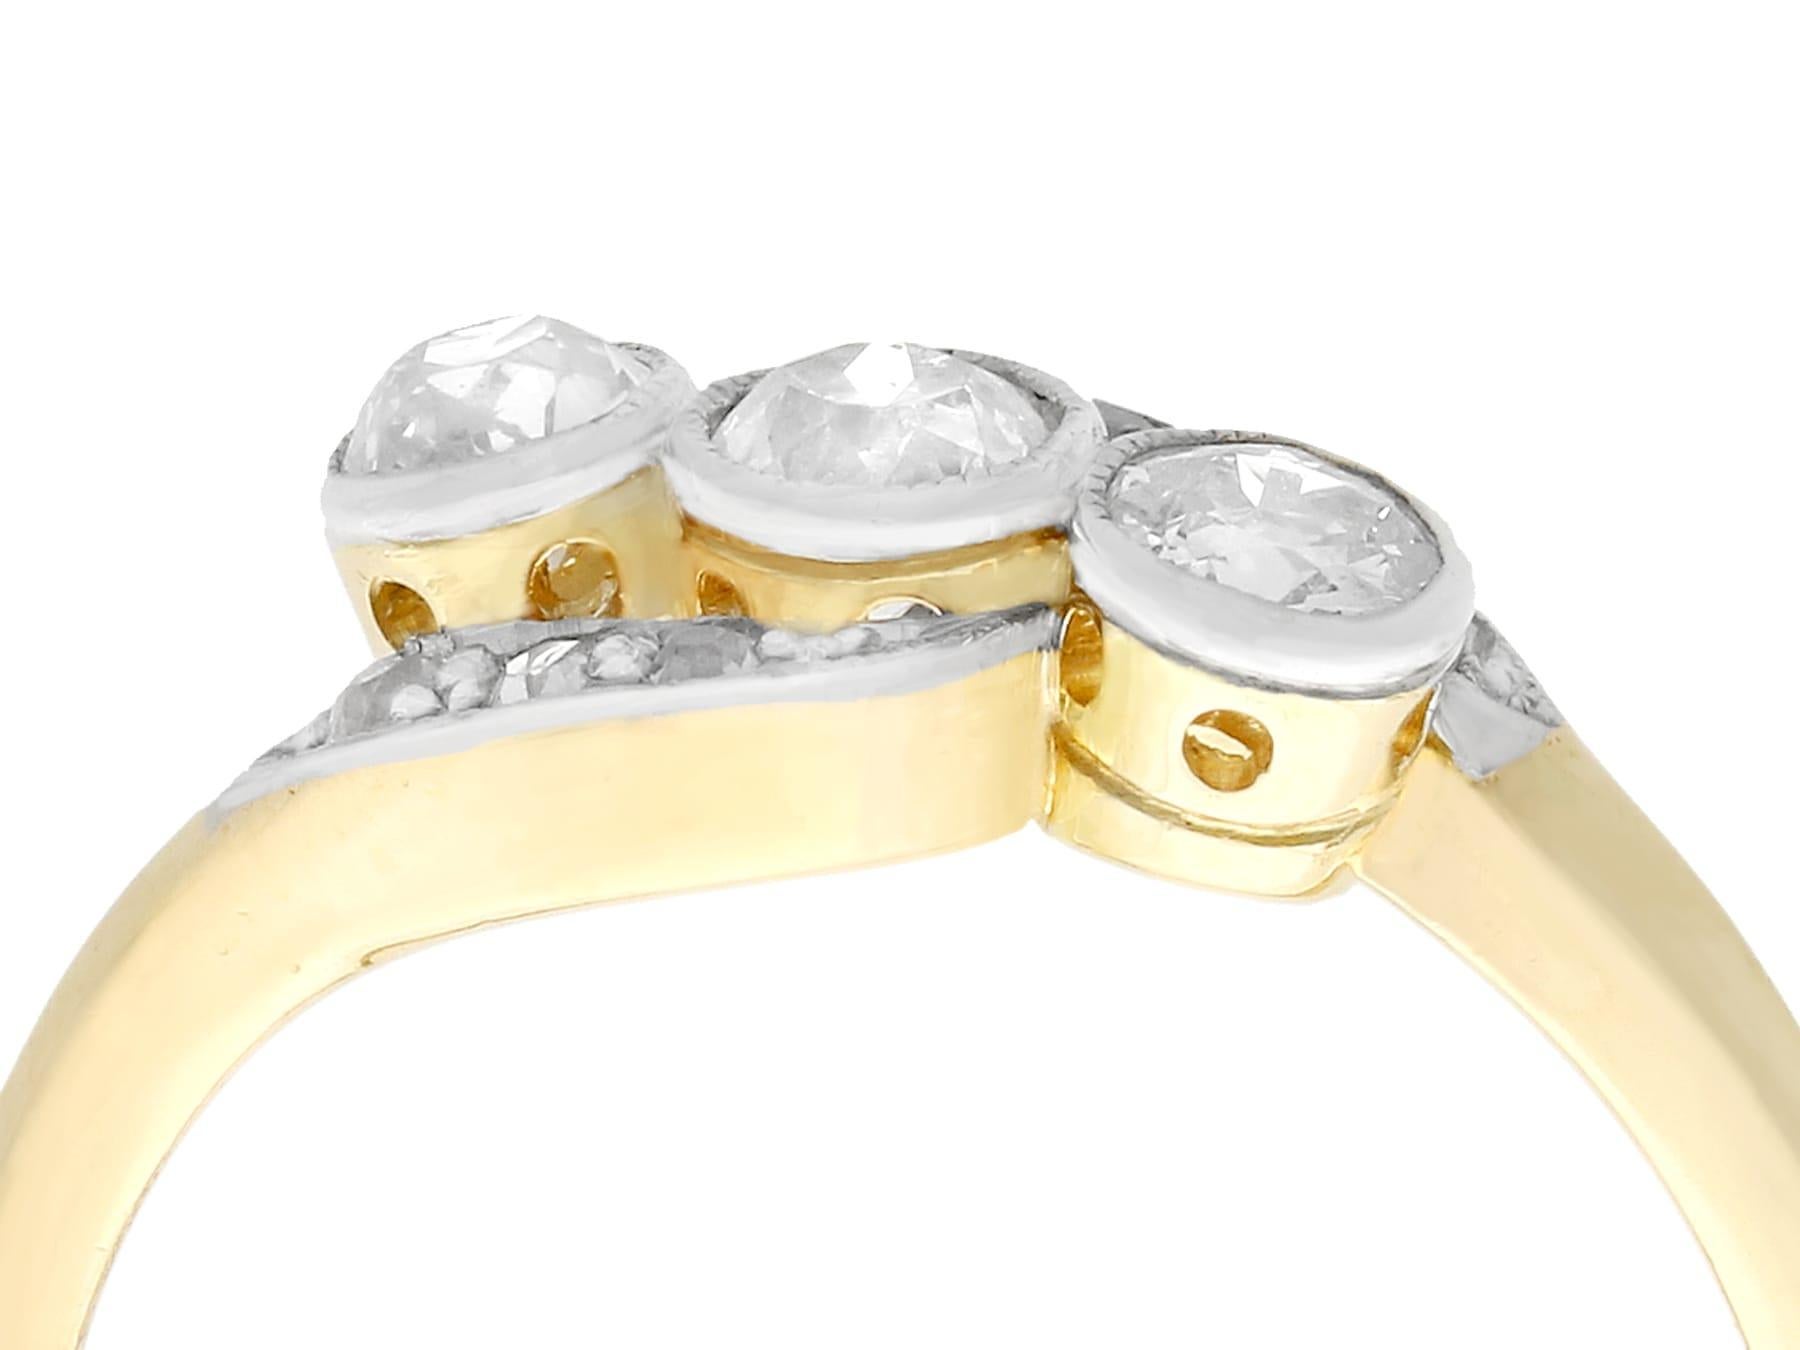 Eine beeindruckende antike 1930er Jahre 0,57 Karat Diamant und 18 Karat Gelbgold, 18 Karat Weißgold gesetzt Twist-Stil Trilogie Ring; Teil unserer vielfältigen antiken Nachlass Schmuck Sammlungen.

Dieser feine und beeindruckende Diamantring aus den